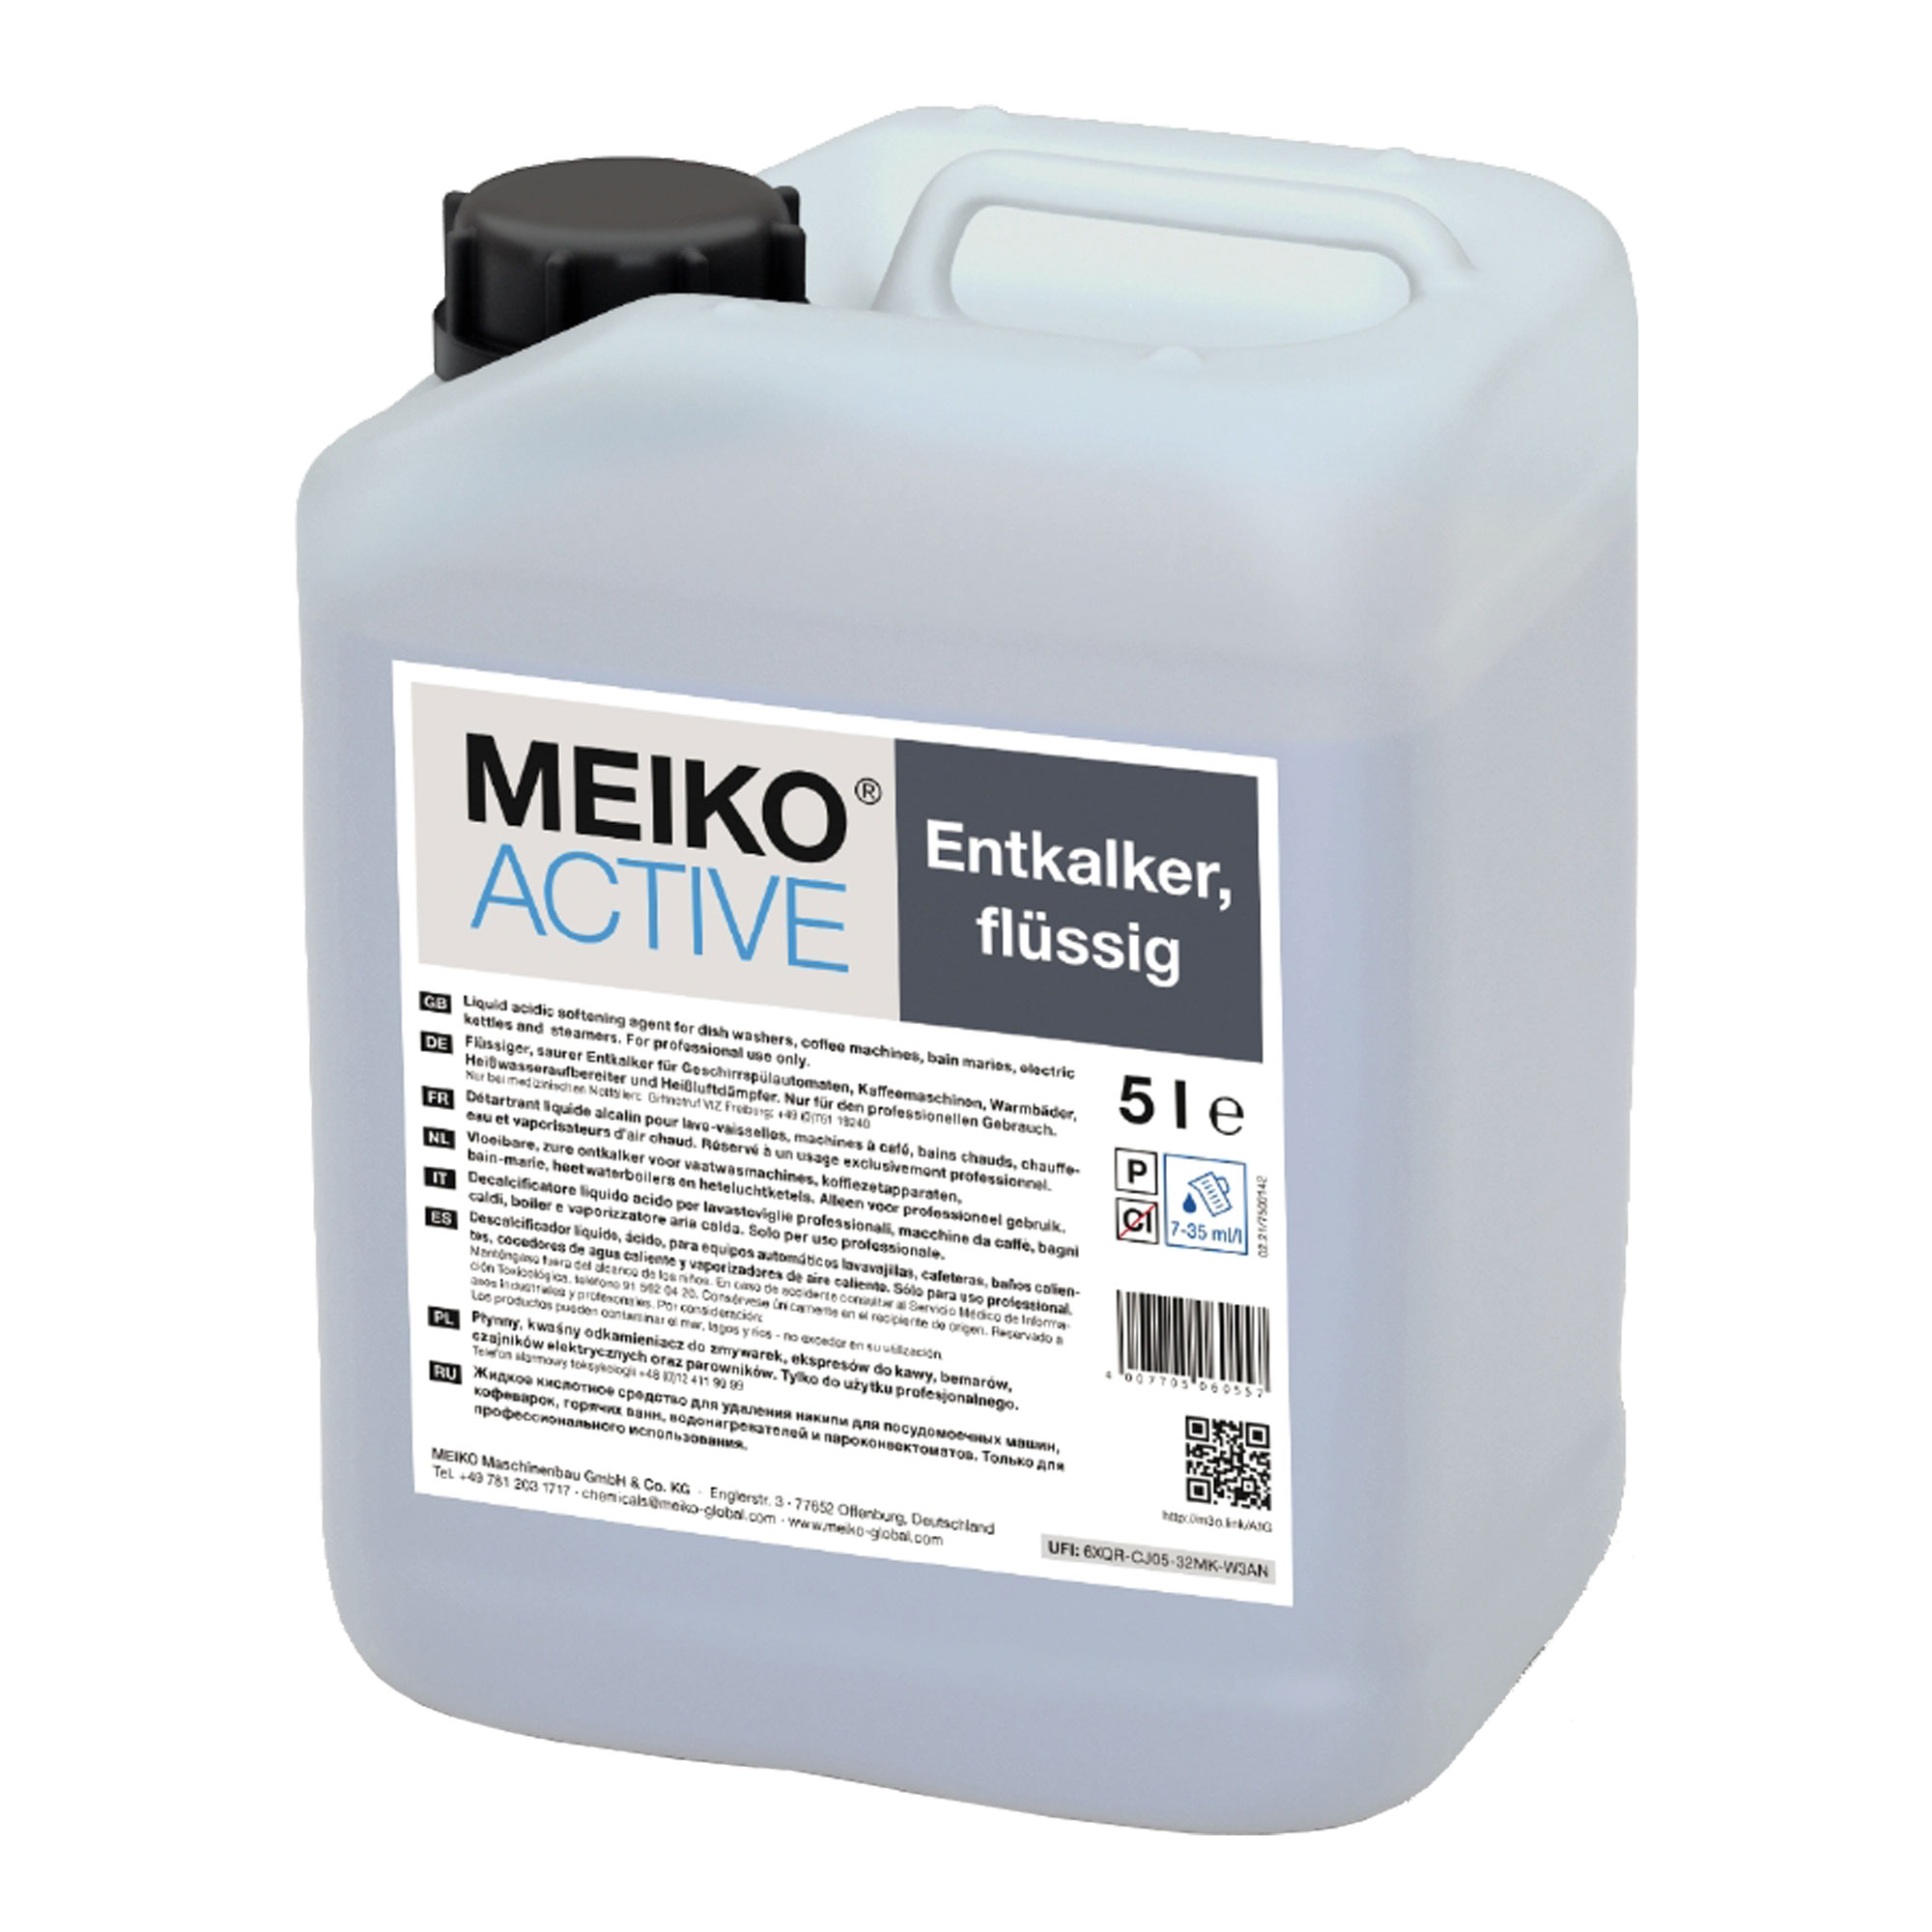 Meiko Active flüssiger Entkalker